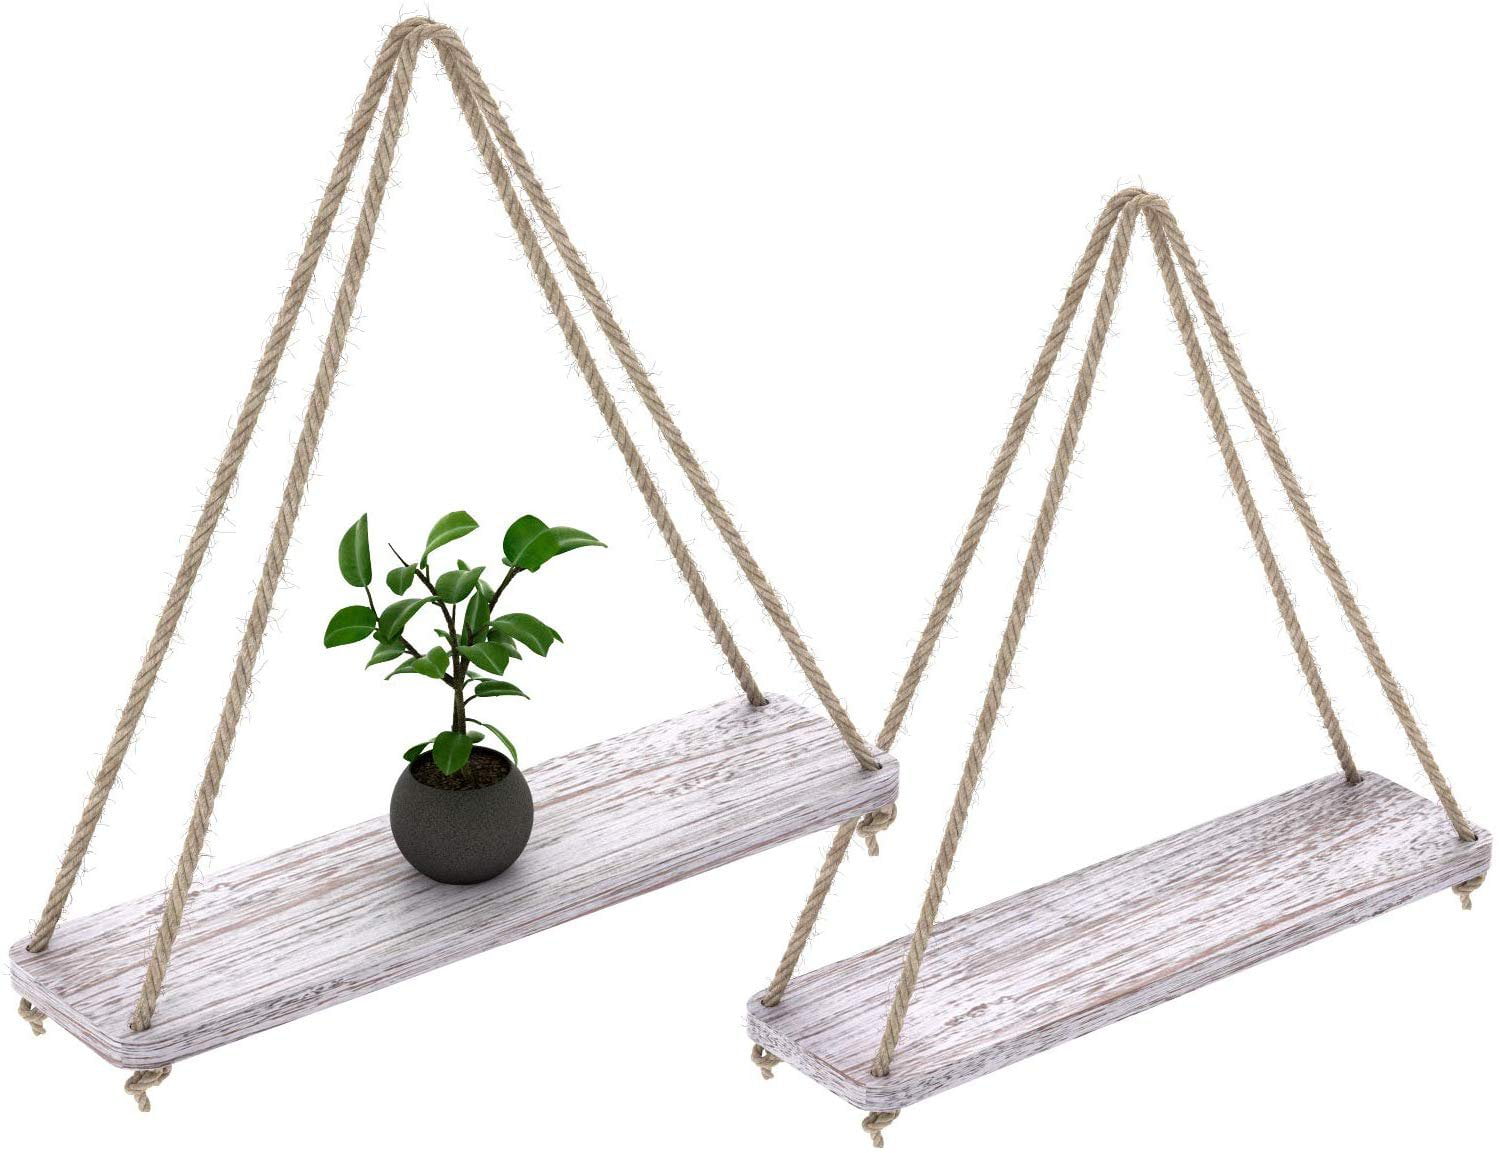 MyGift 17-inch Whitewashed Wood Hanging Rope Swing Shelves Set of 2 